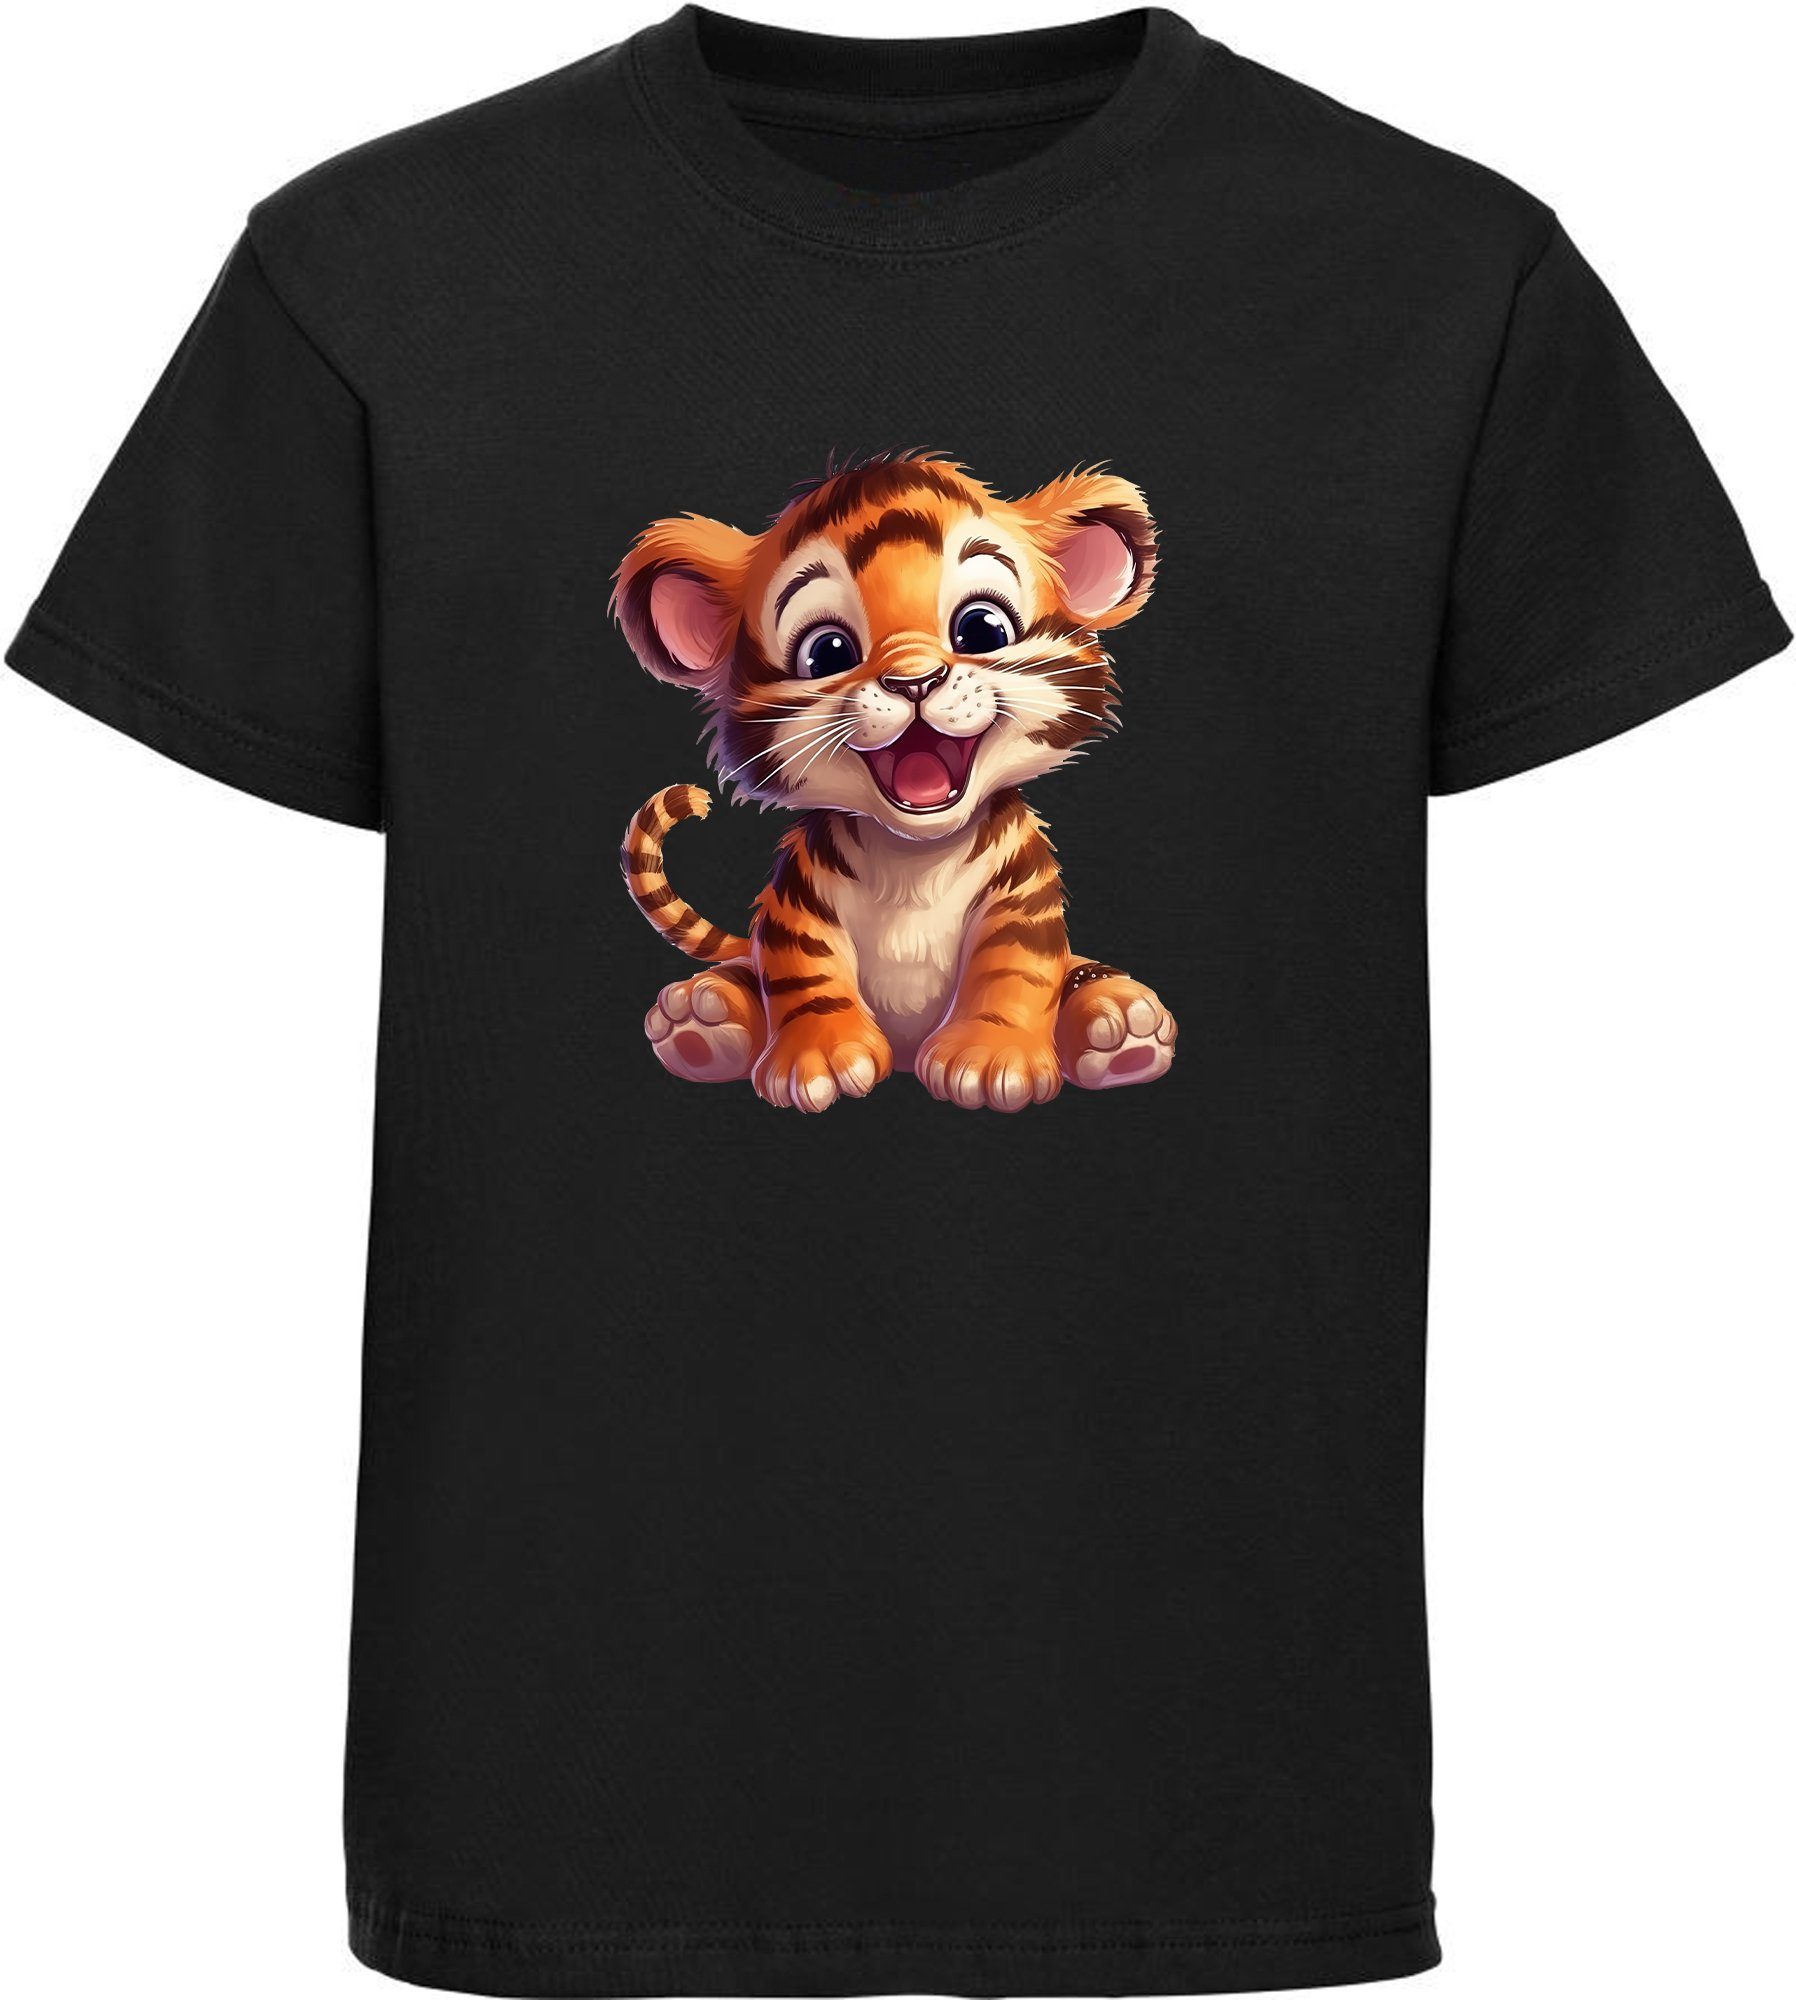 MyDesign24 T-Shirt Kinder Wildtier Print Shirt bedruckt - Baby Tiger Baumwollshirt mit Aufdruck, i266 schwarz